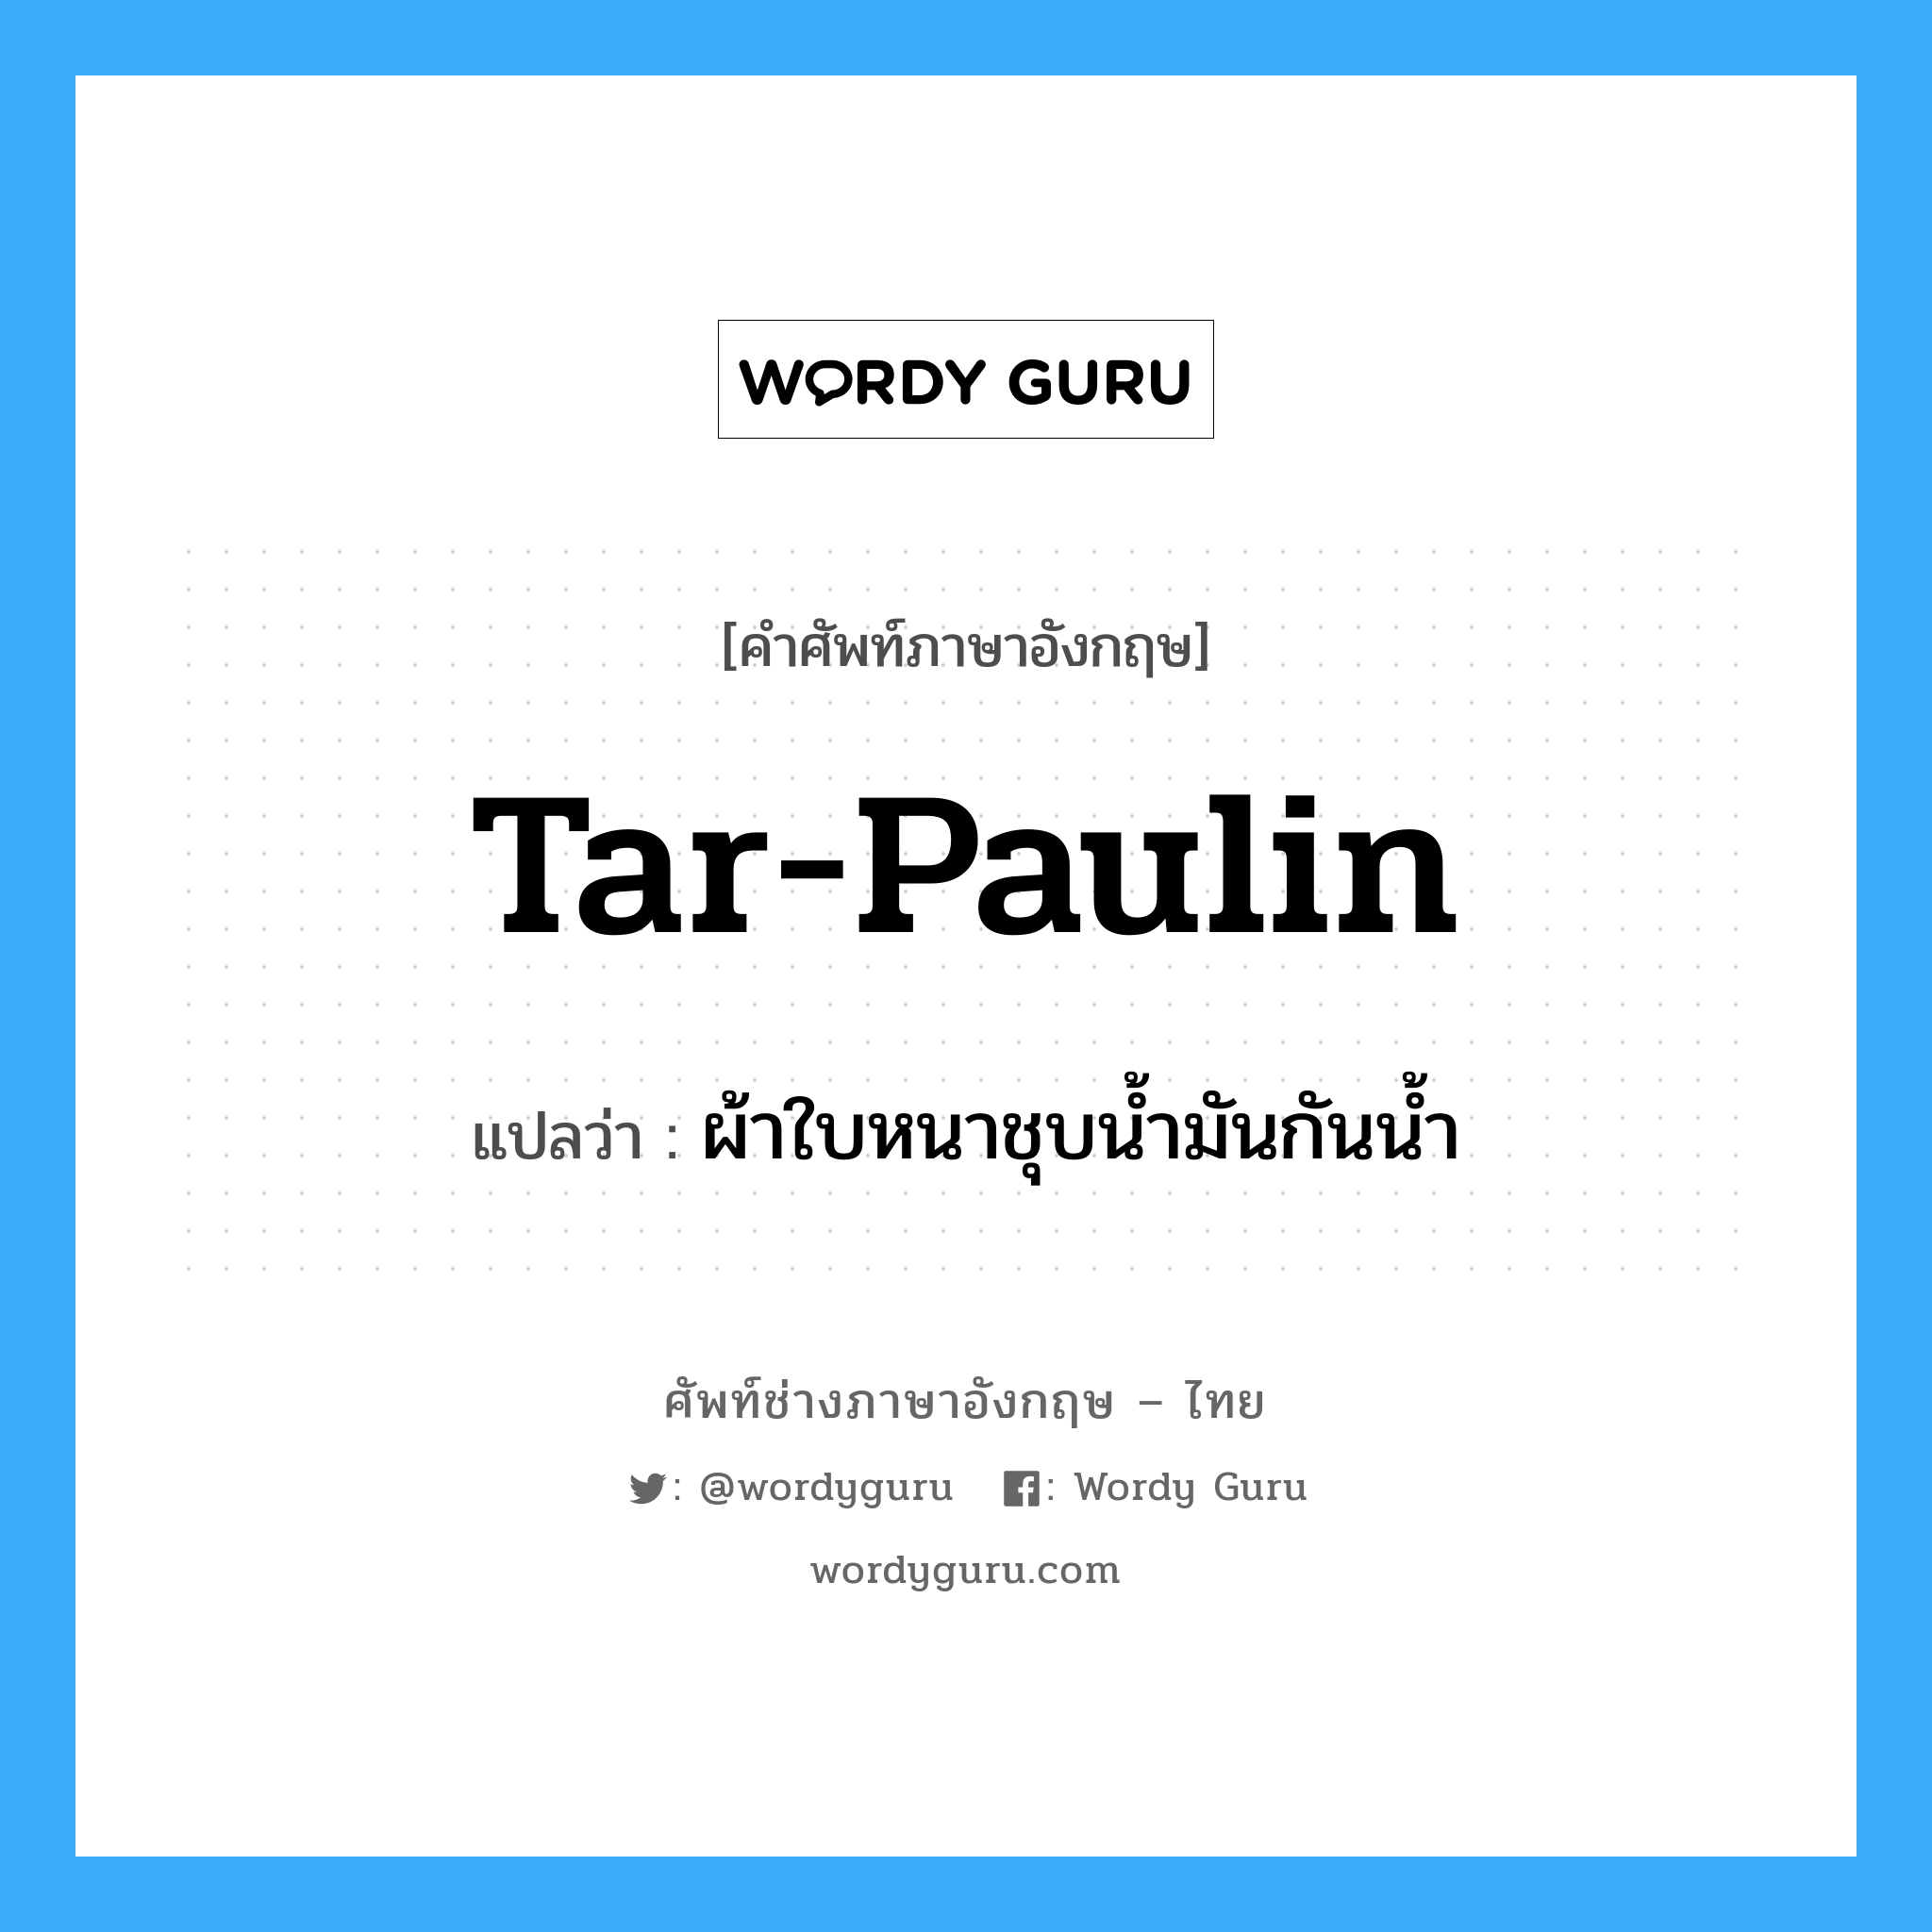 tar-paulin แปลว่า?, คำศัพท์ช่างภาษาอังกฤษ - ไทย tar-paulin คำศัพท์ภาษาอังกฤษ tar-paulin แปลว่า ผ้าใบหนาชุบน้ำมันกันน้ำ